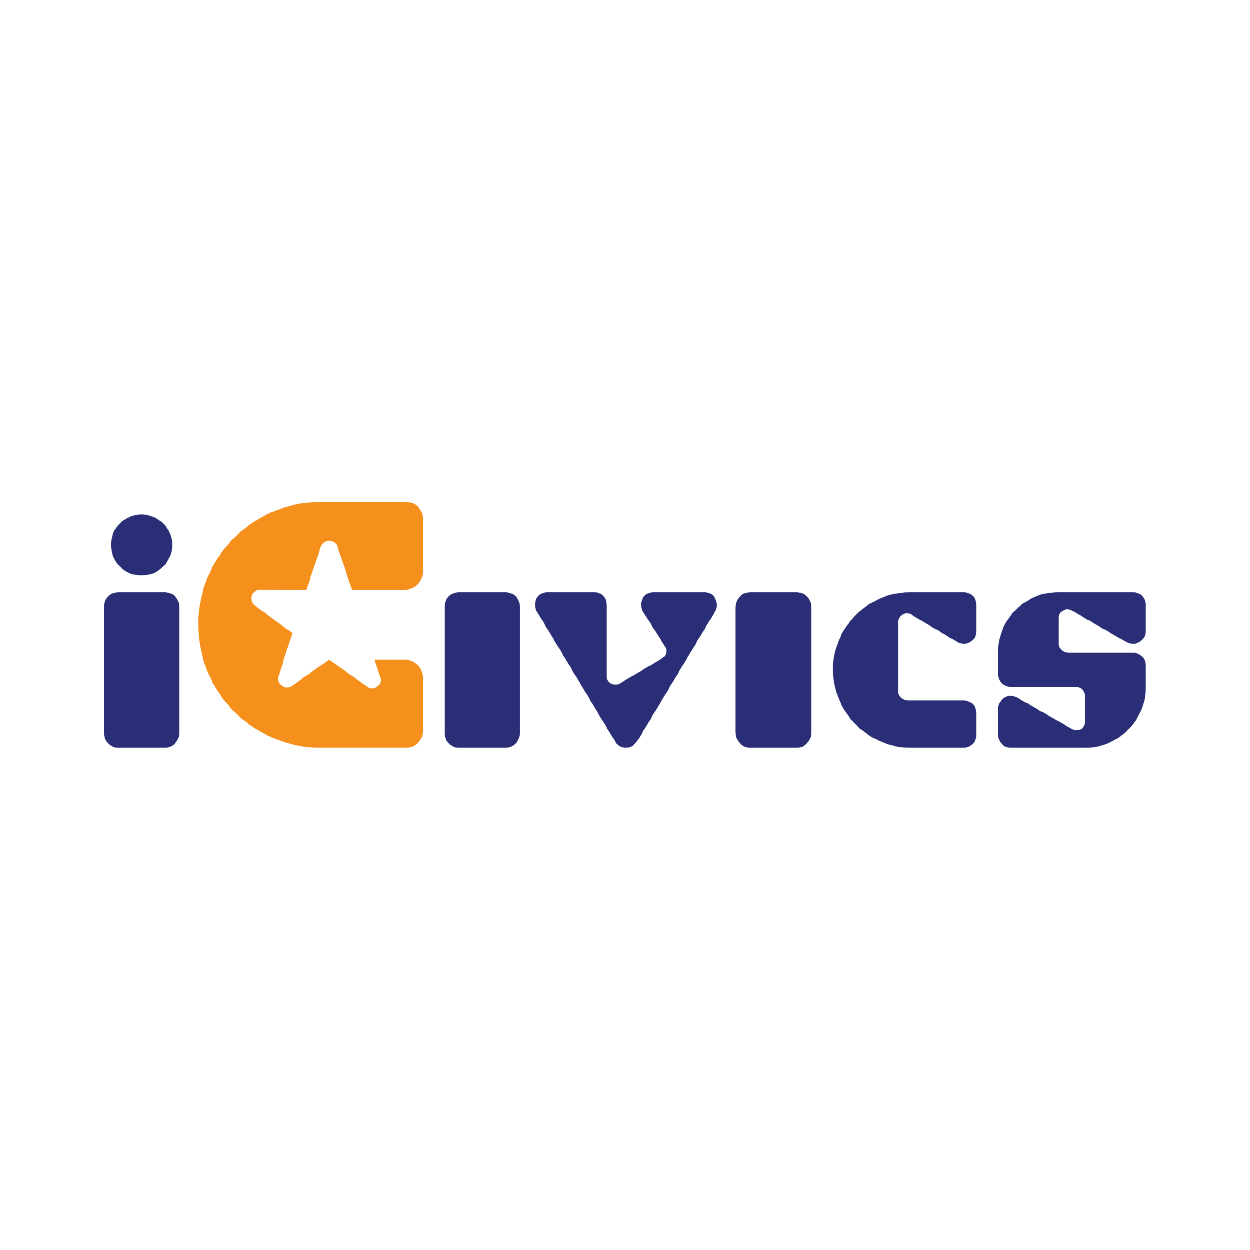 iCivics.png